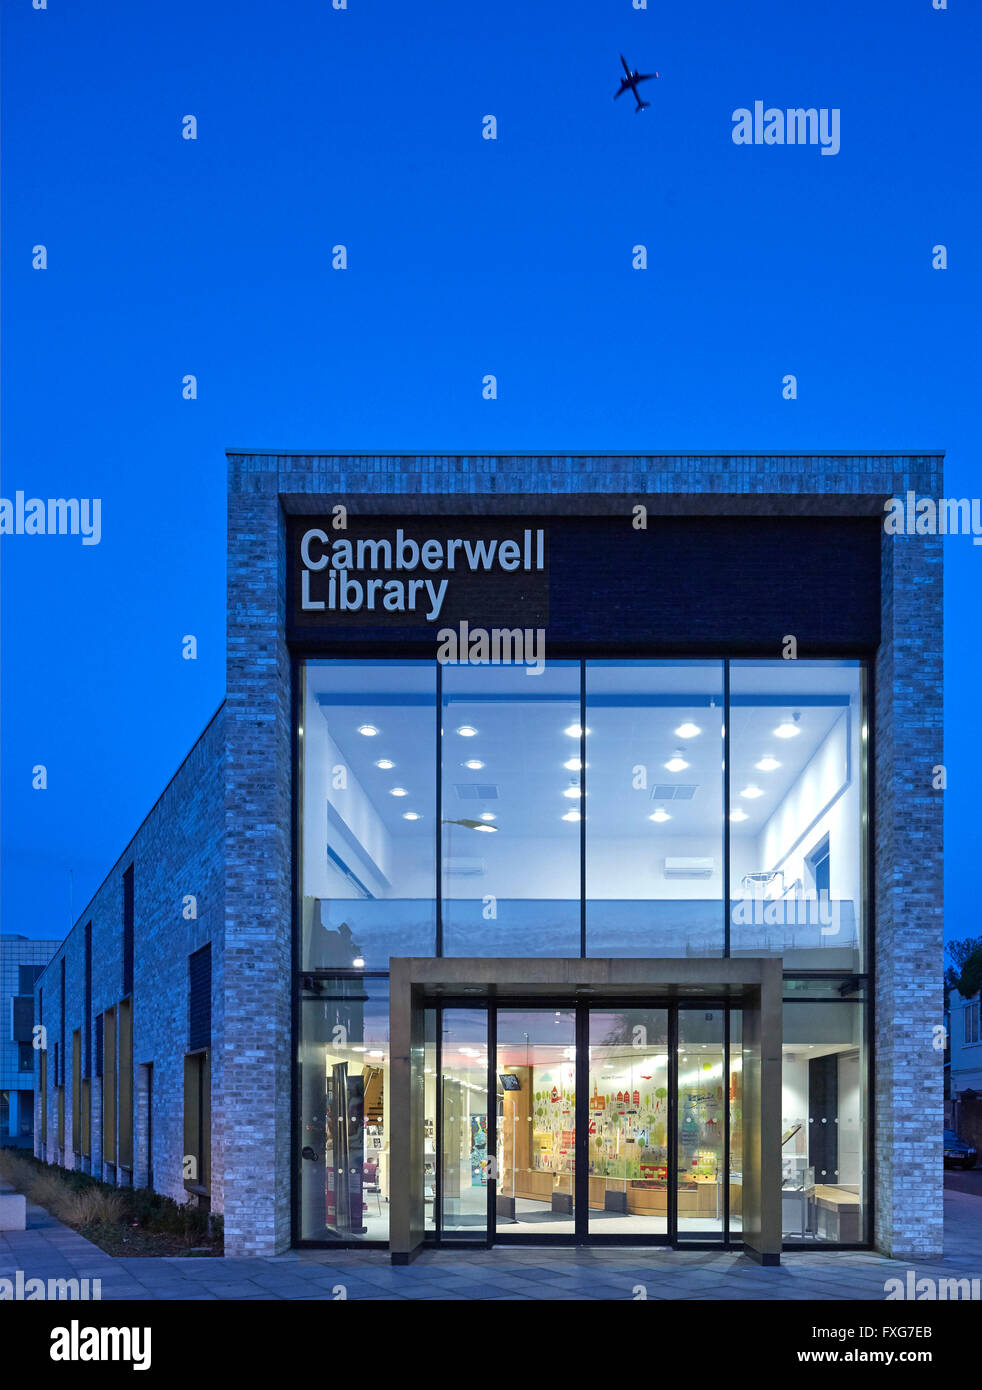 Entrée privée au crépuscule. Camberwell Library, Londres, Royaume-Uni. Architecte : John McAslan & Partners, 2016. Banque D'Images